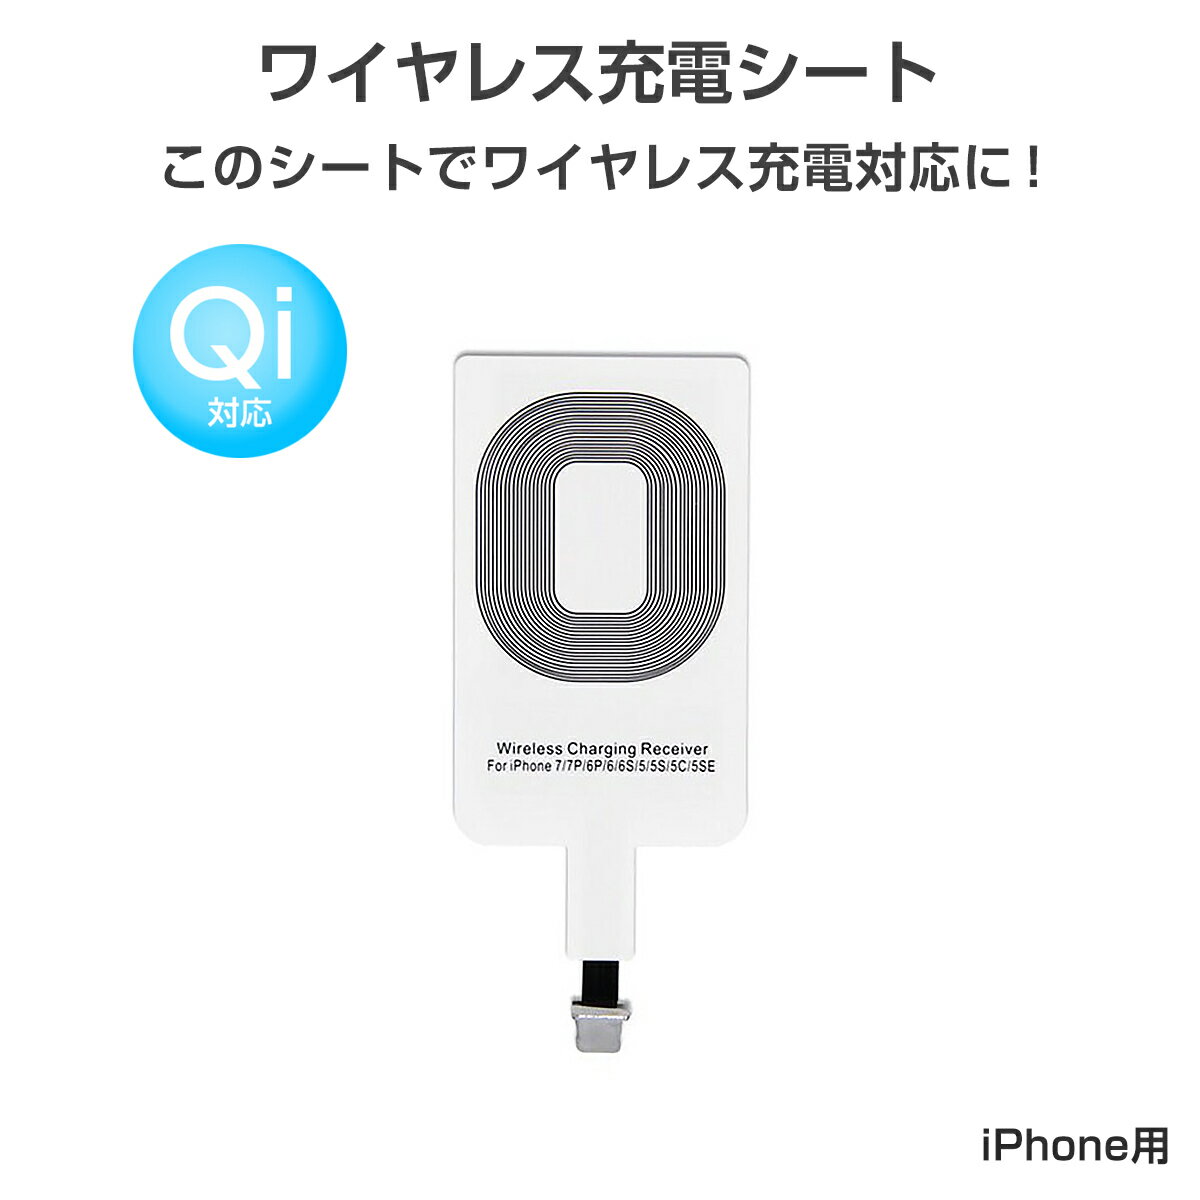 ワイヤレス充電レシーバー ワイヤレス充電化 Qi 拡張 スマホ iPhone用 iPhone 7/7 Plus/6/6 Plus/5/5s/5c対応 1ヶ月保証